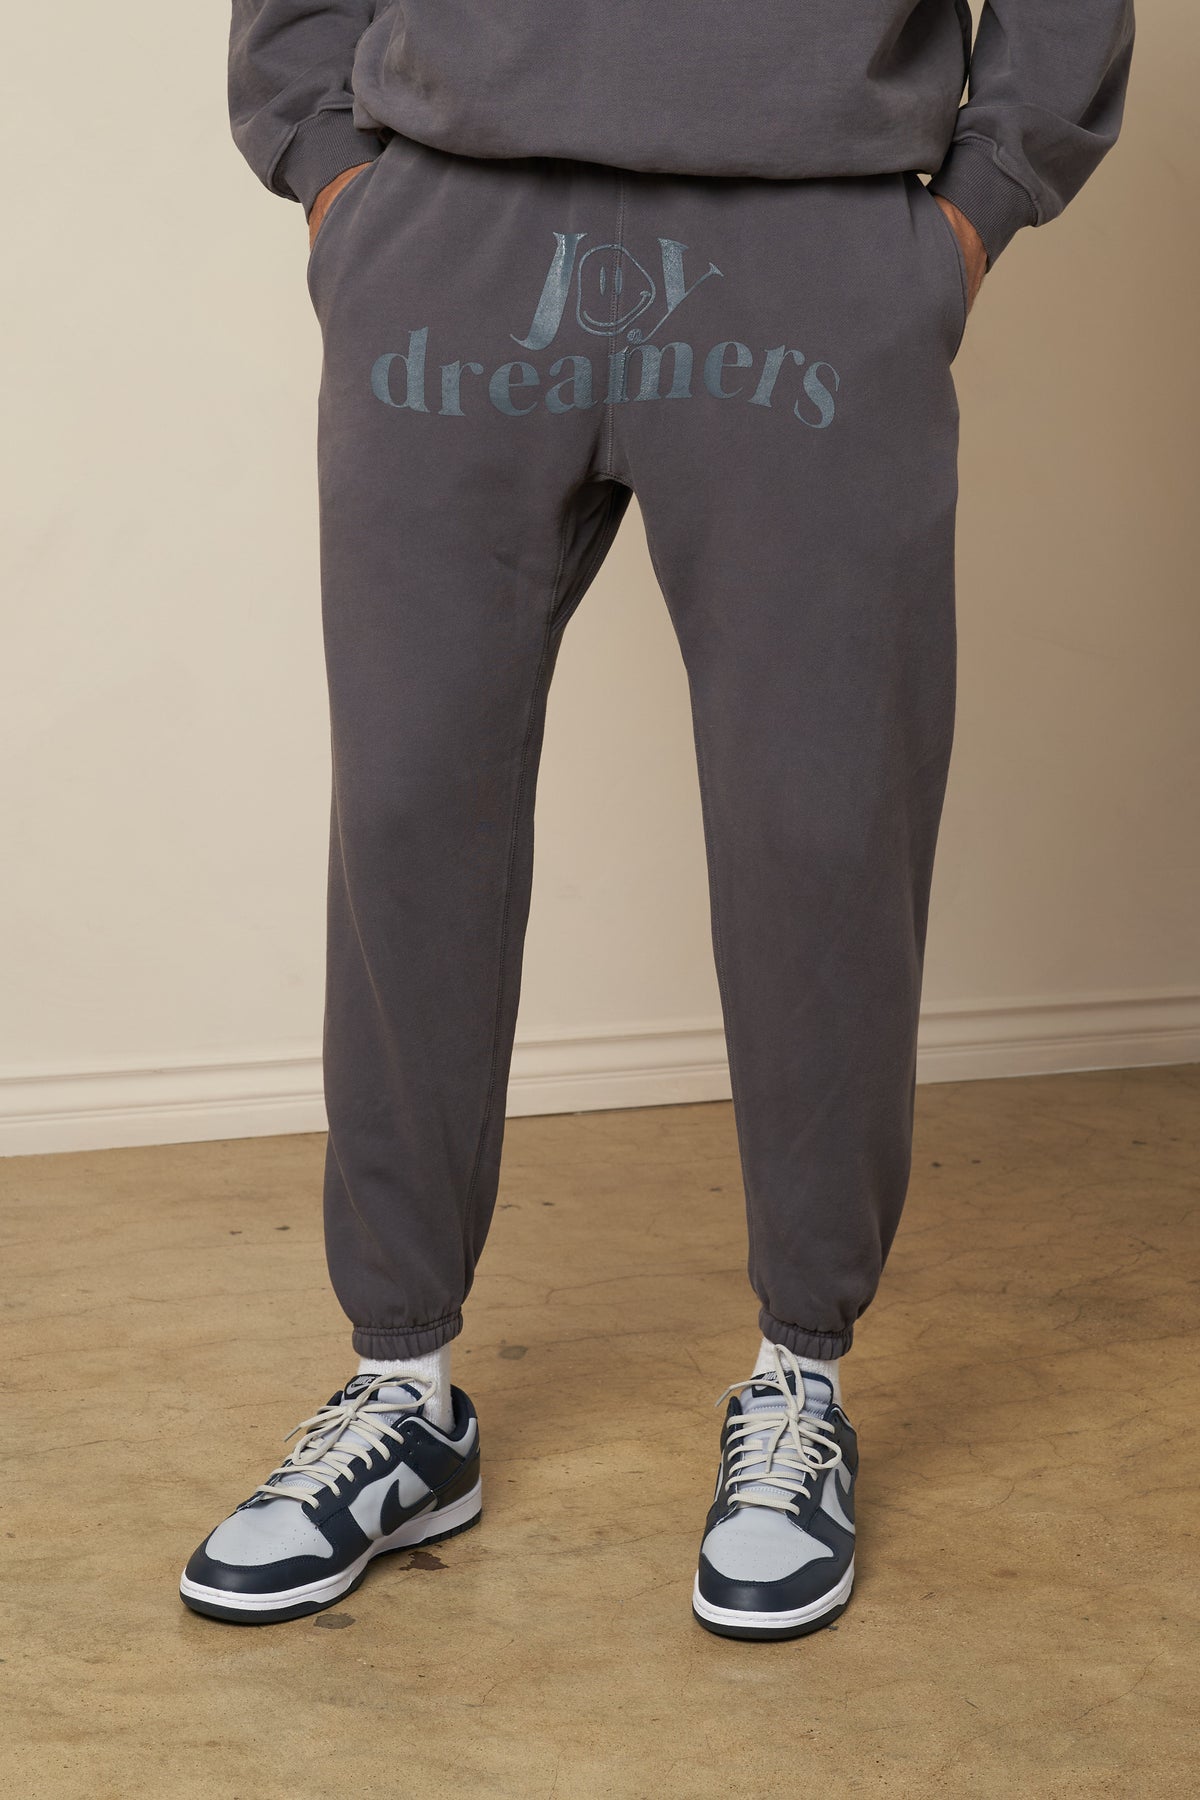 Only Dreamer sweatpants in silver mink